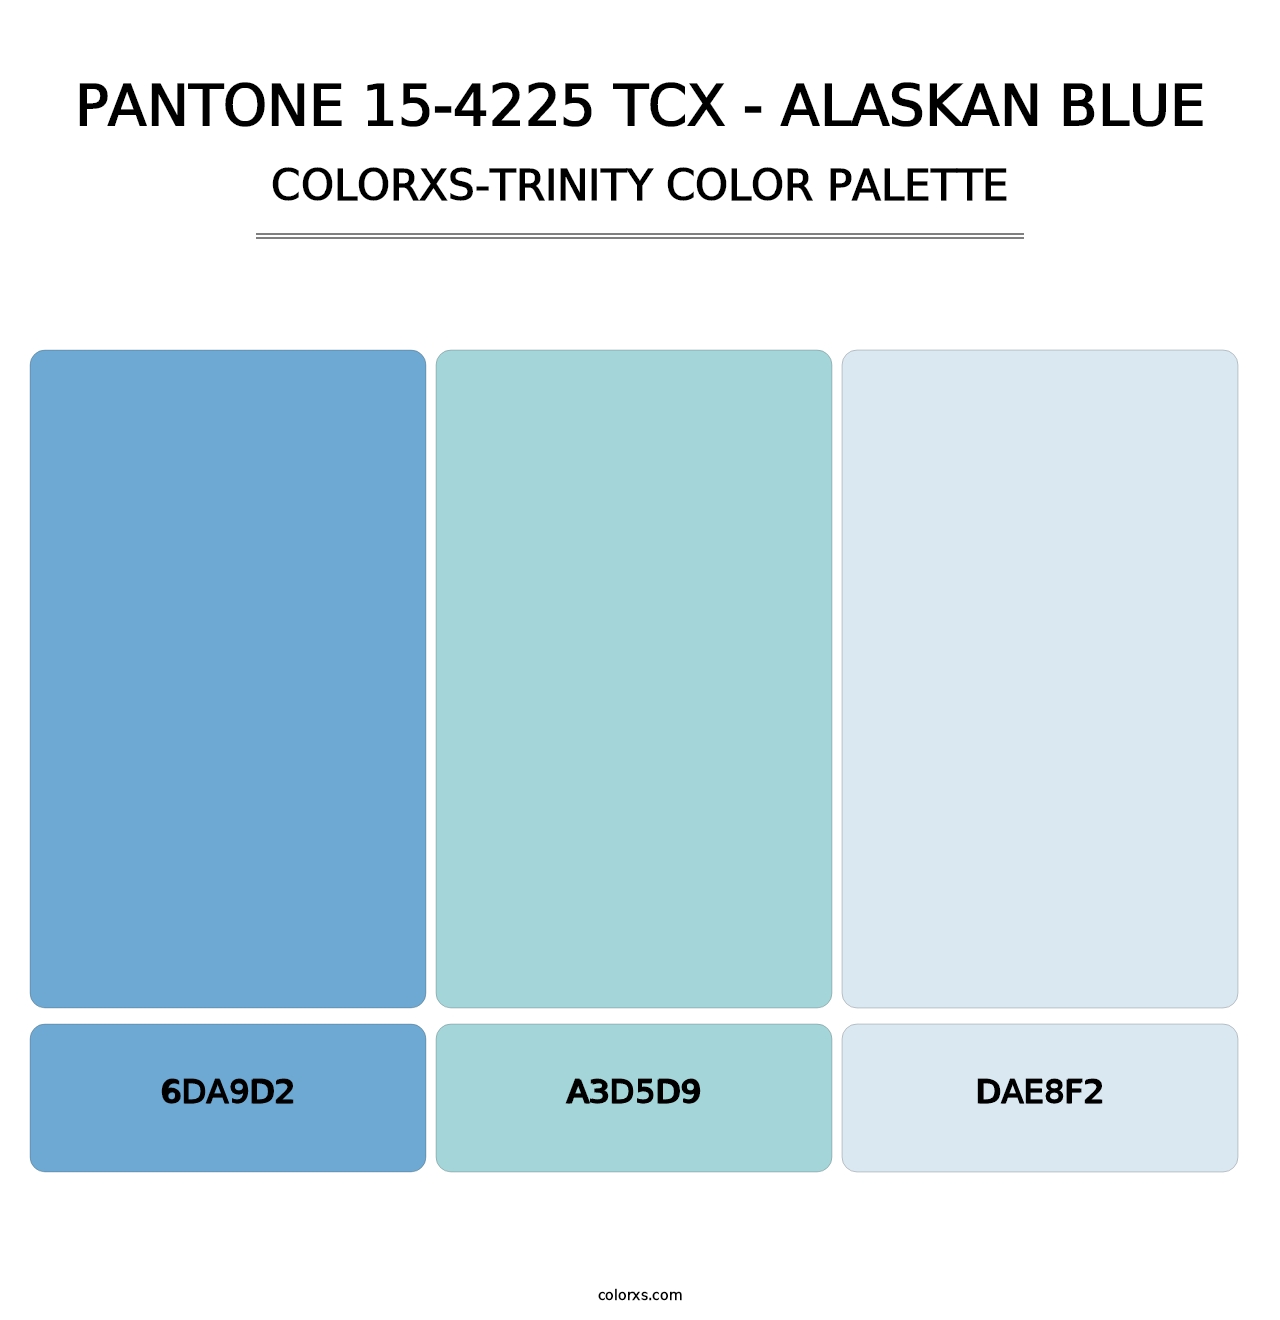 PANTONE 15-4225 TCX - Alaskan Blue - Colorxs Trinity Palette